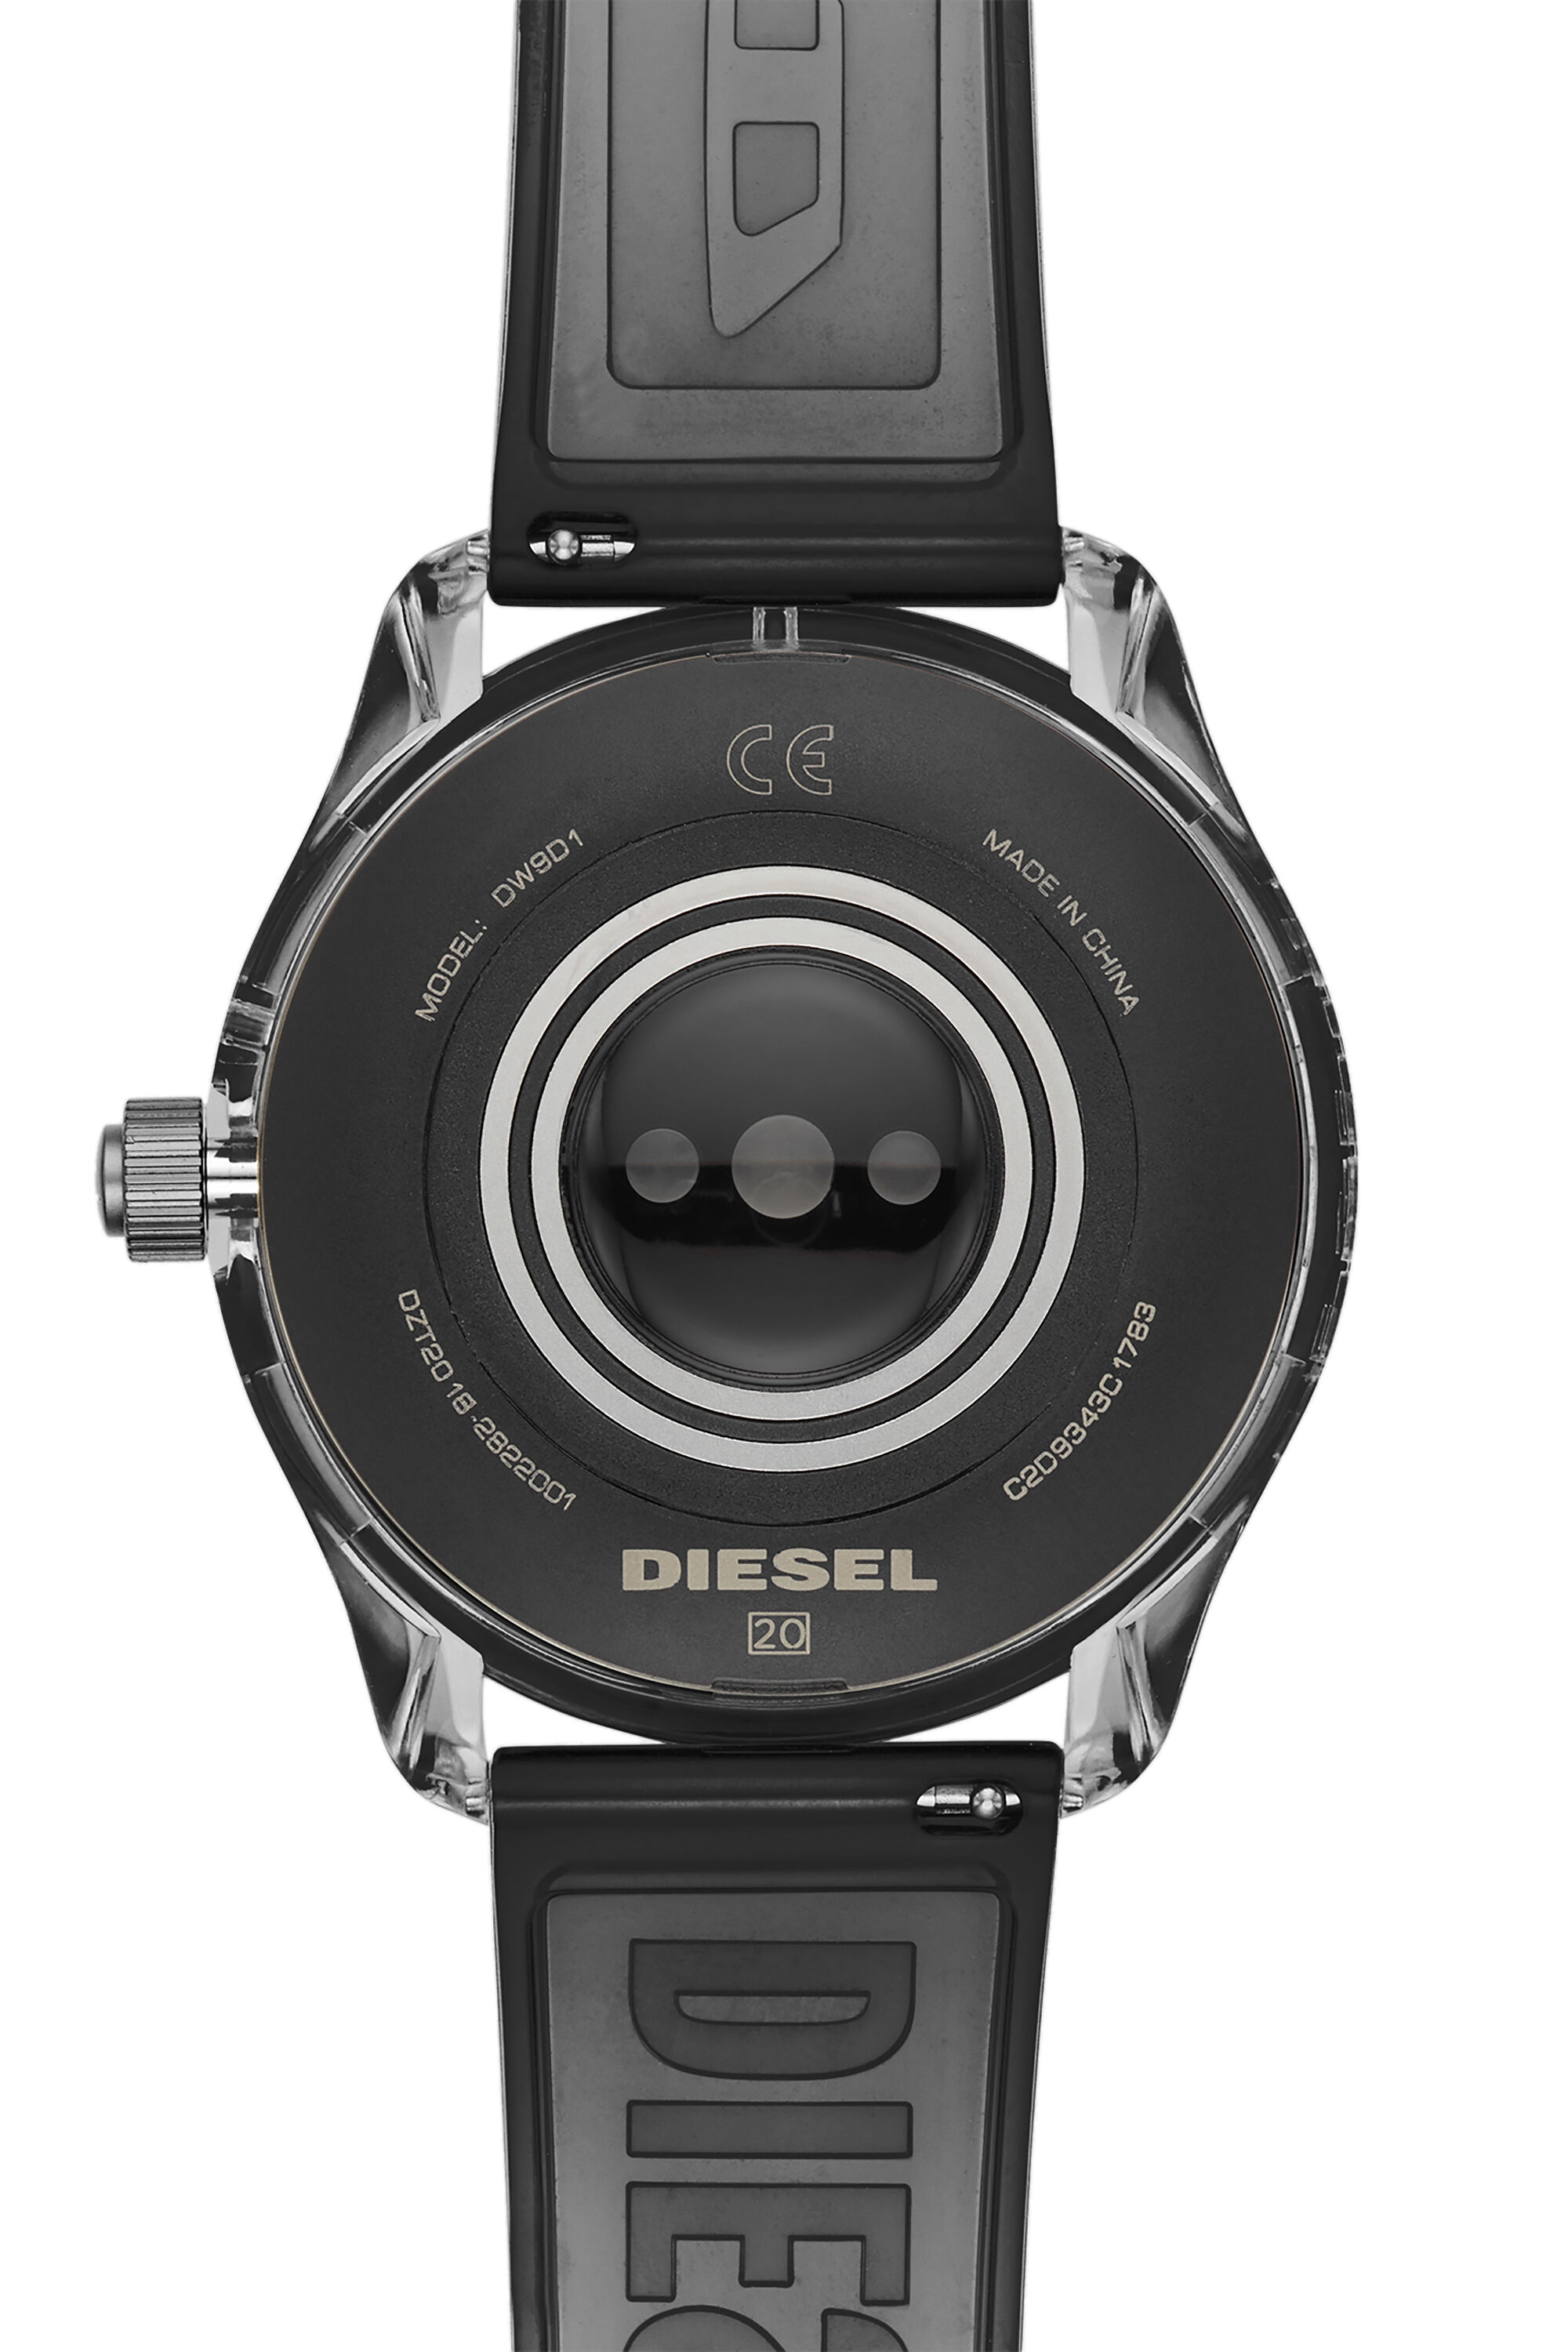 Diesel - DT2018, Black - Image 4